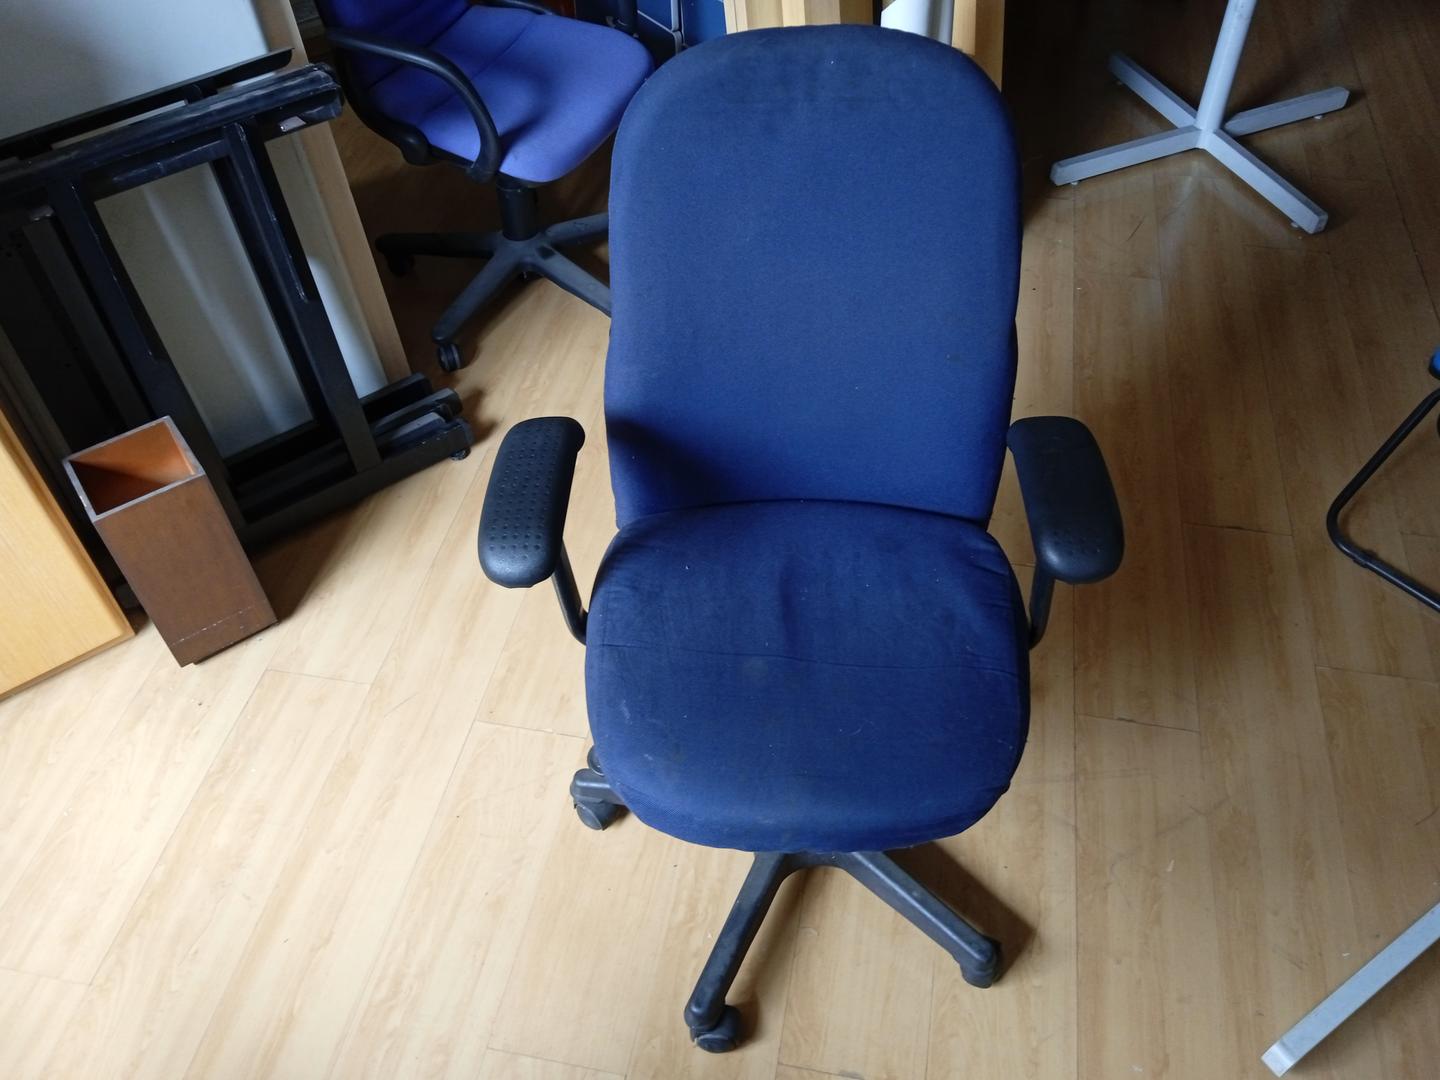 Cadeira giratória c/ braços e rodas em Plástico / Estofado Azul 90 cm x 64 cm x 56 cm